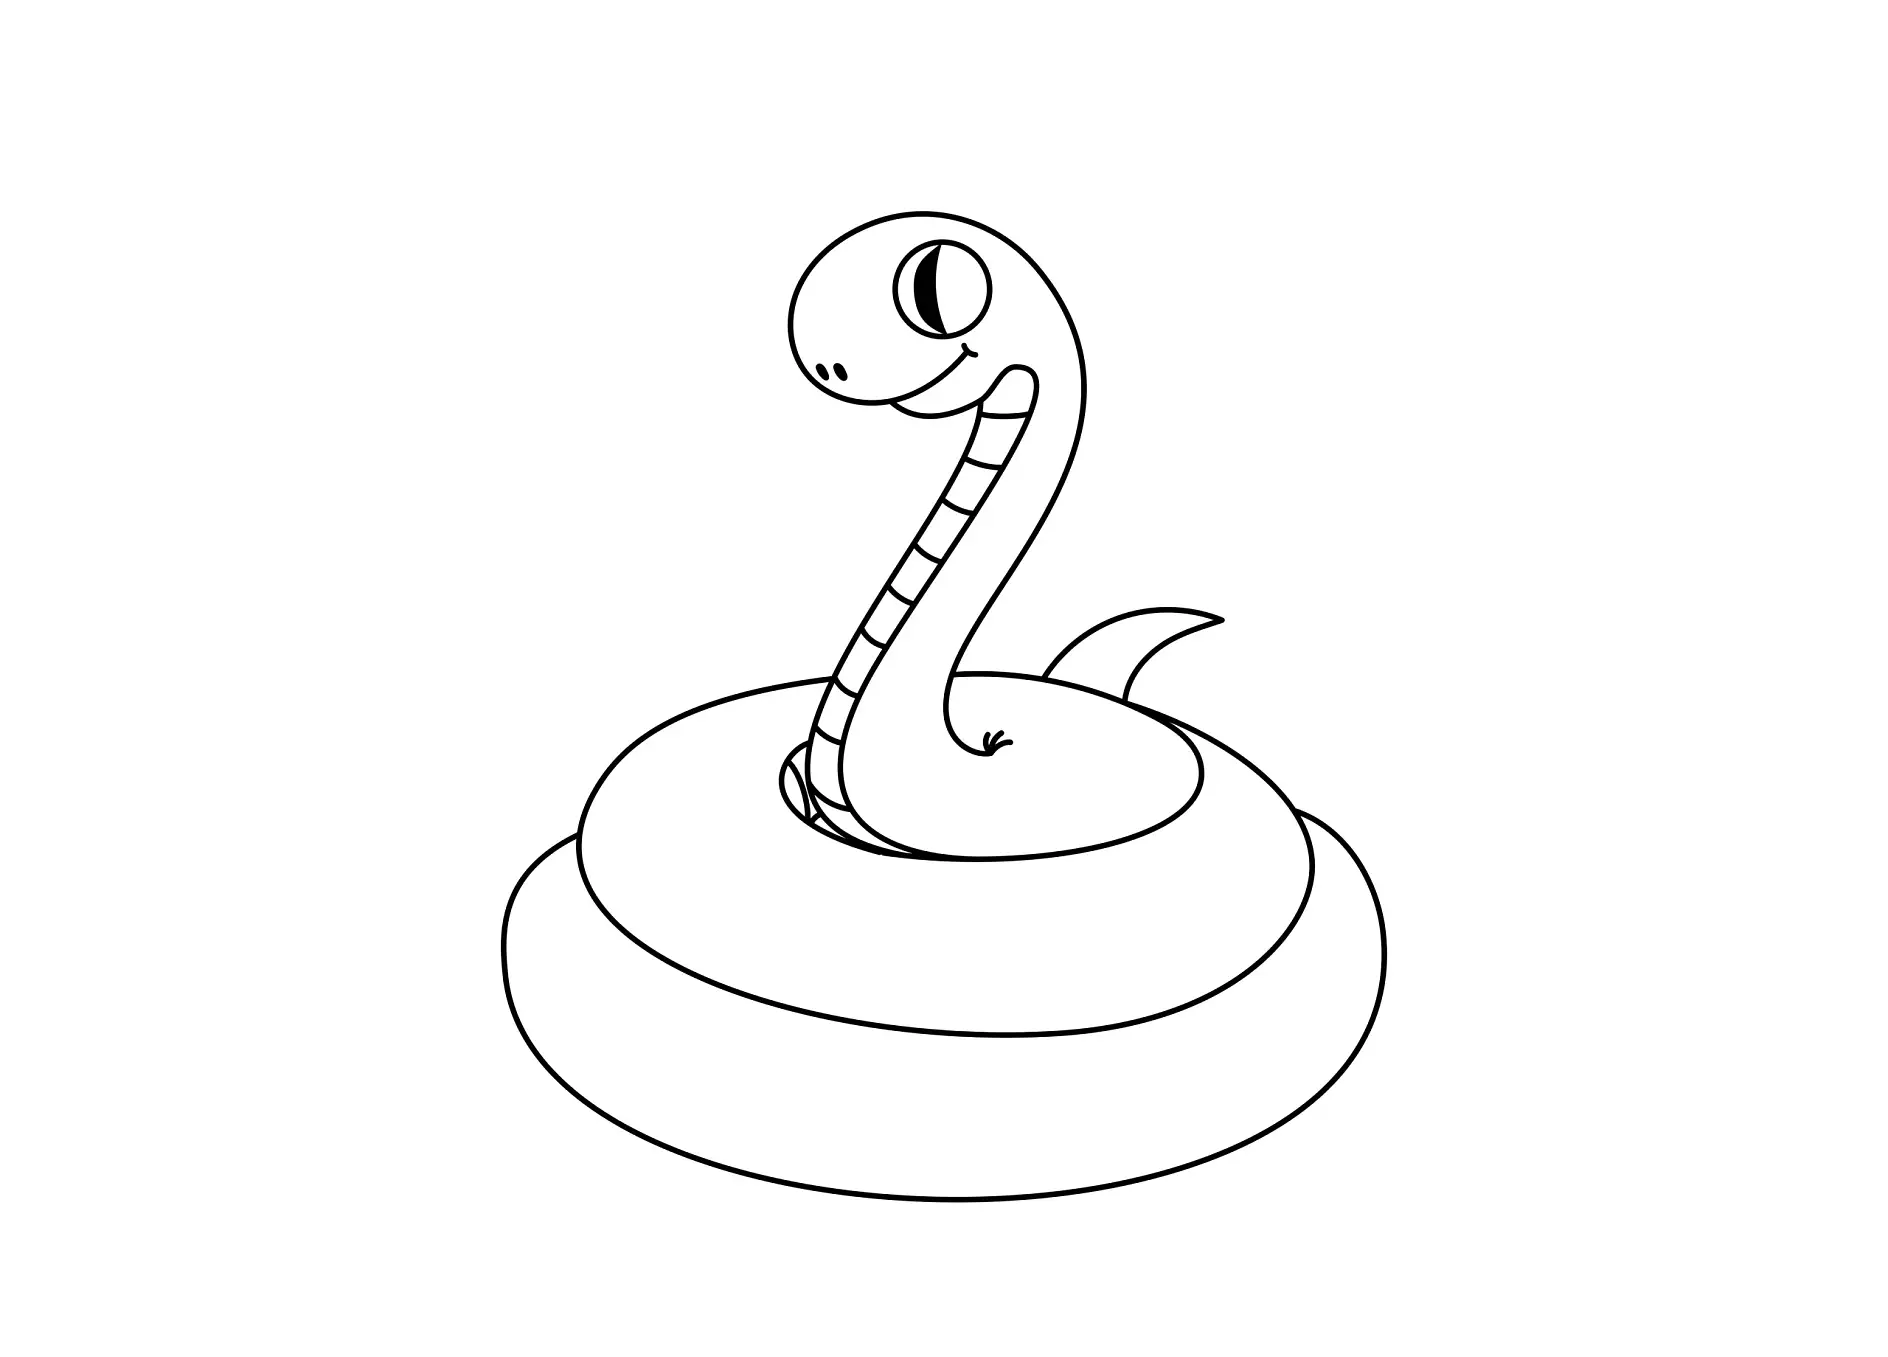 Ausmalbild einfache Schlange mit Strichmuster